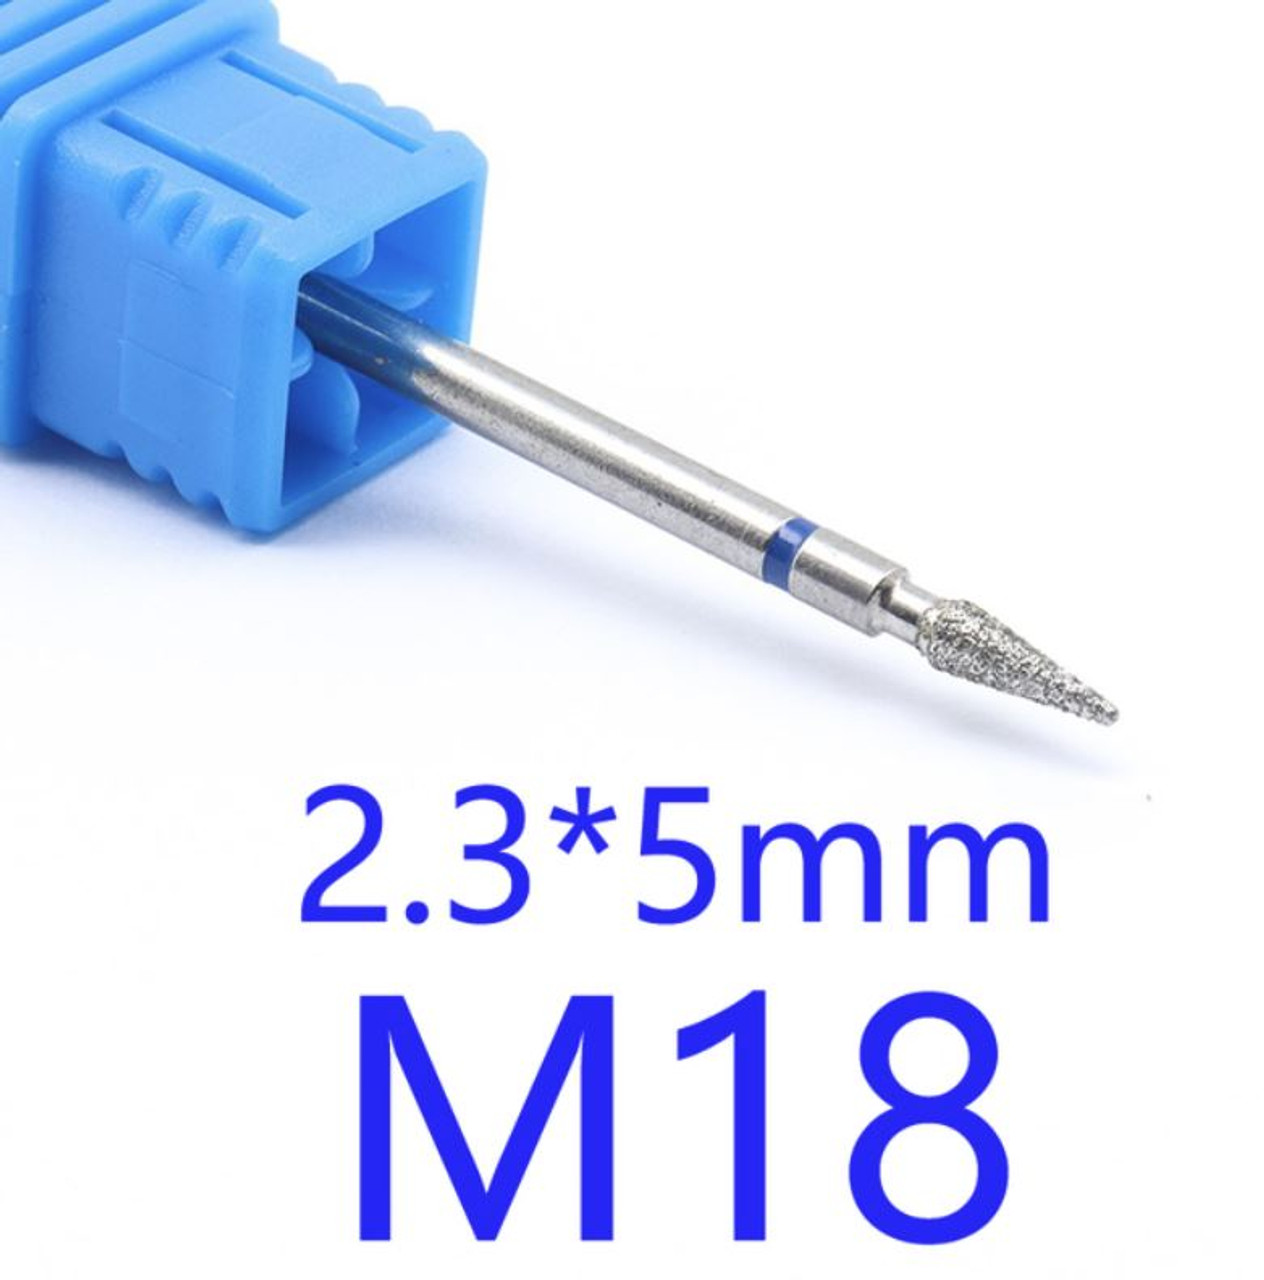 NDi beauty Diamond Drill Bit - 3/32 shank (MEDIUM) - M18